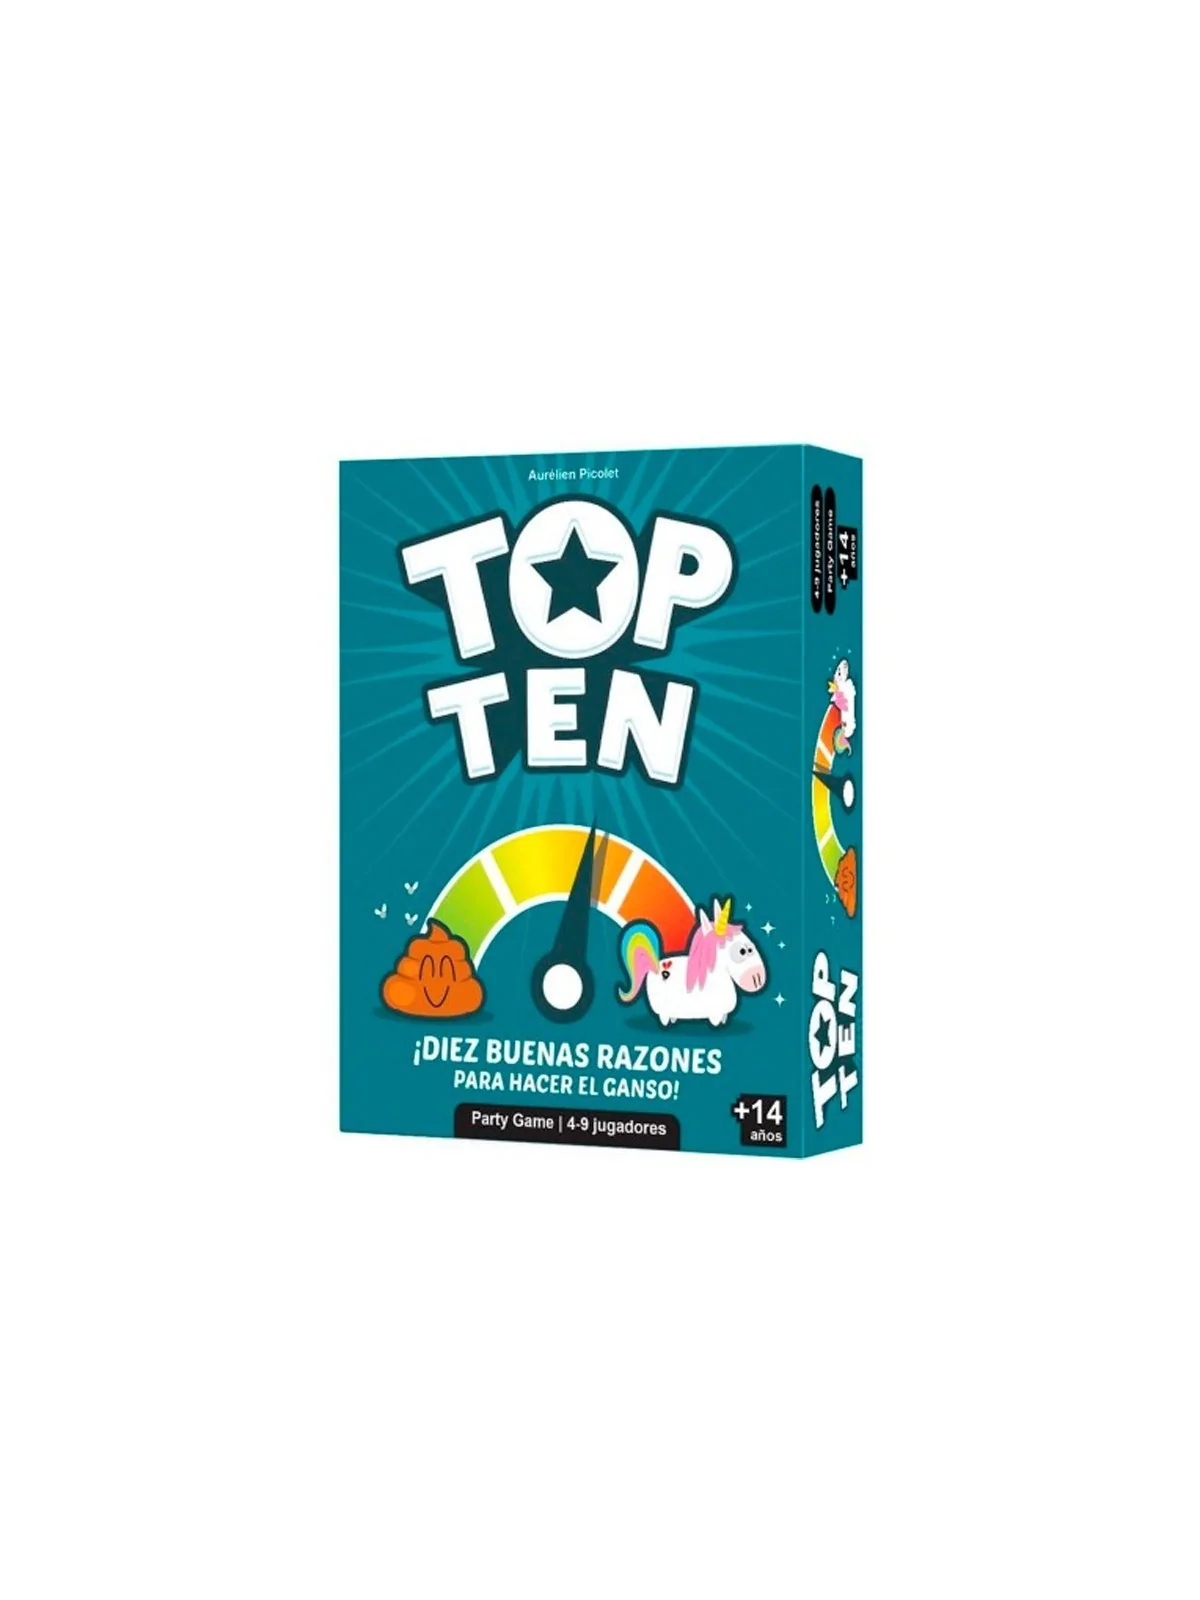 Comprar Top Ten barato al mejor precio 17,99 € de Cocktail Games